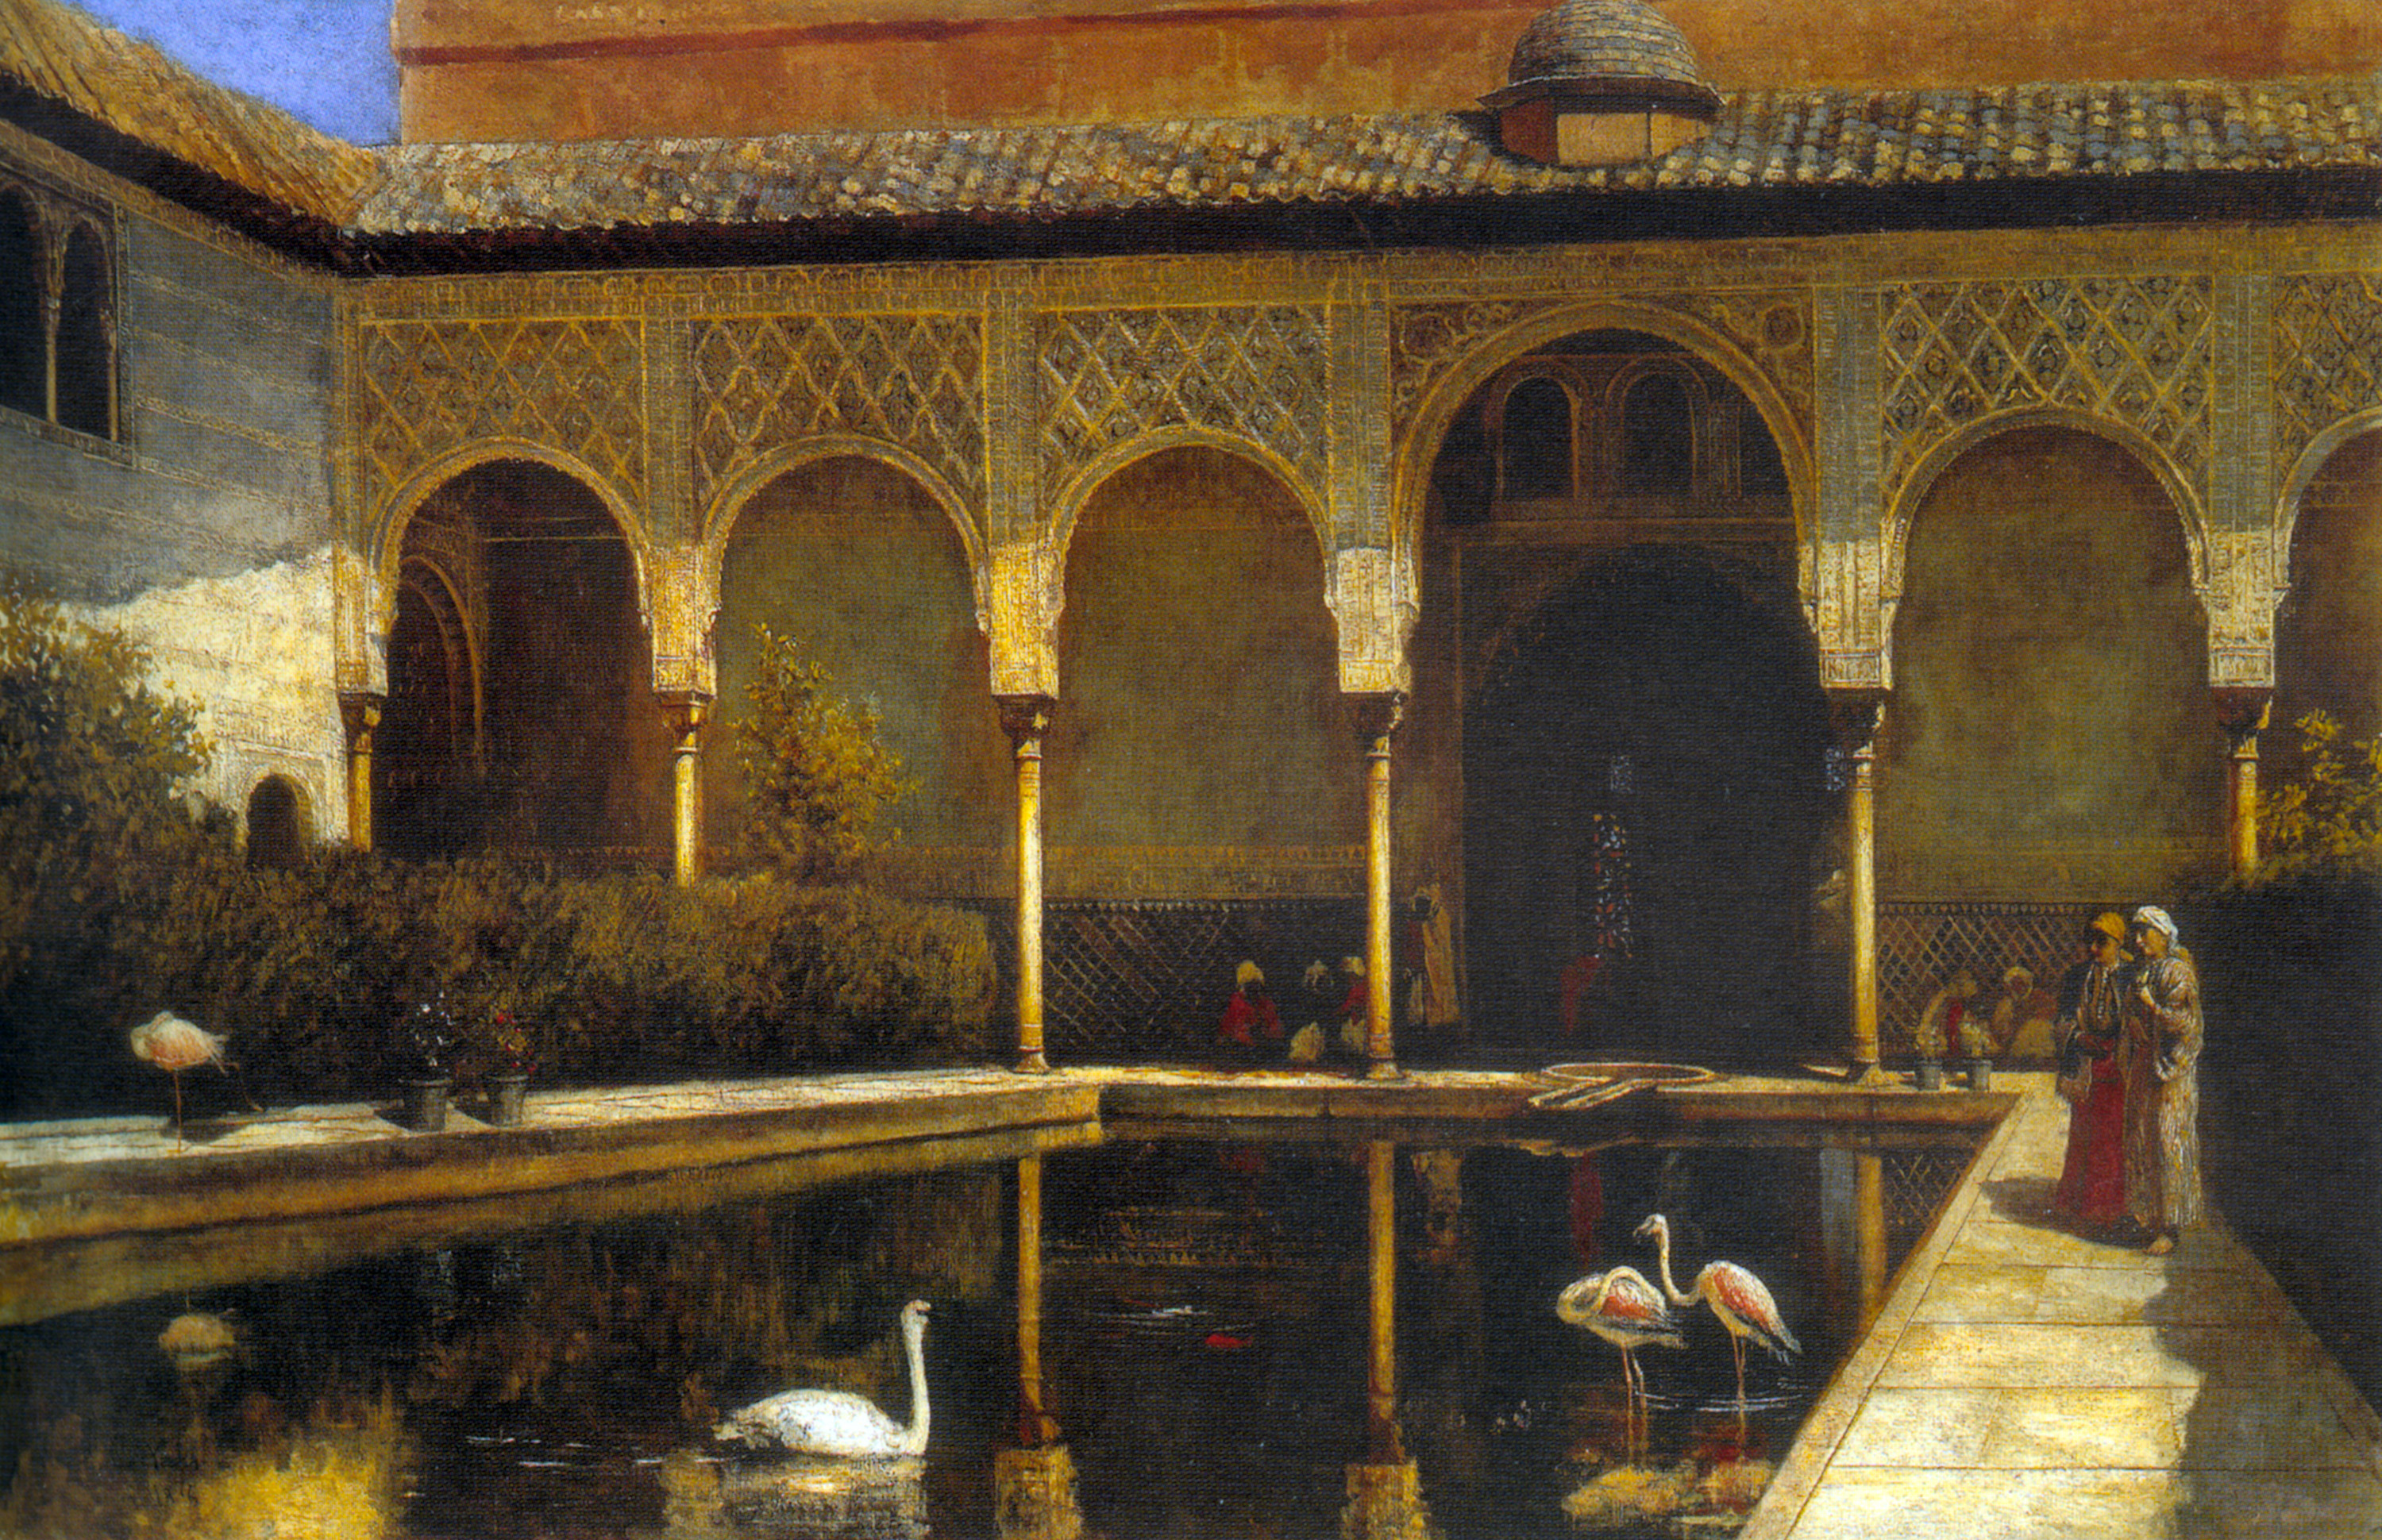  "Дворик Альгамбры во времена мавров", Эдвин Лорд Уикс, 1876 